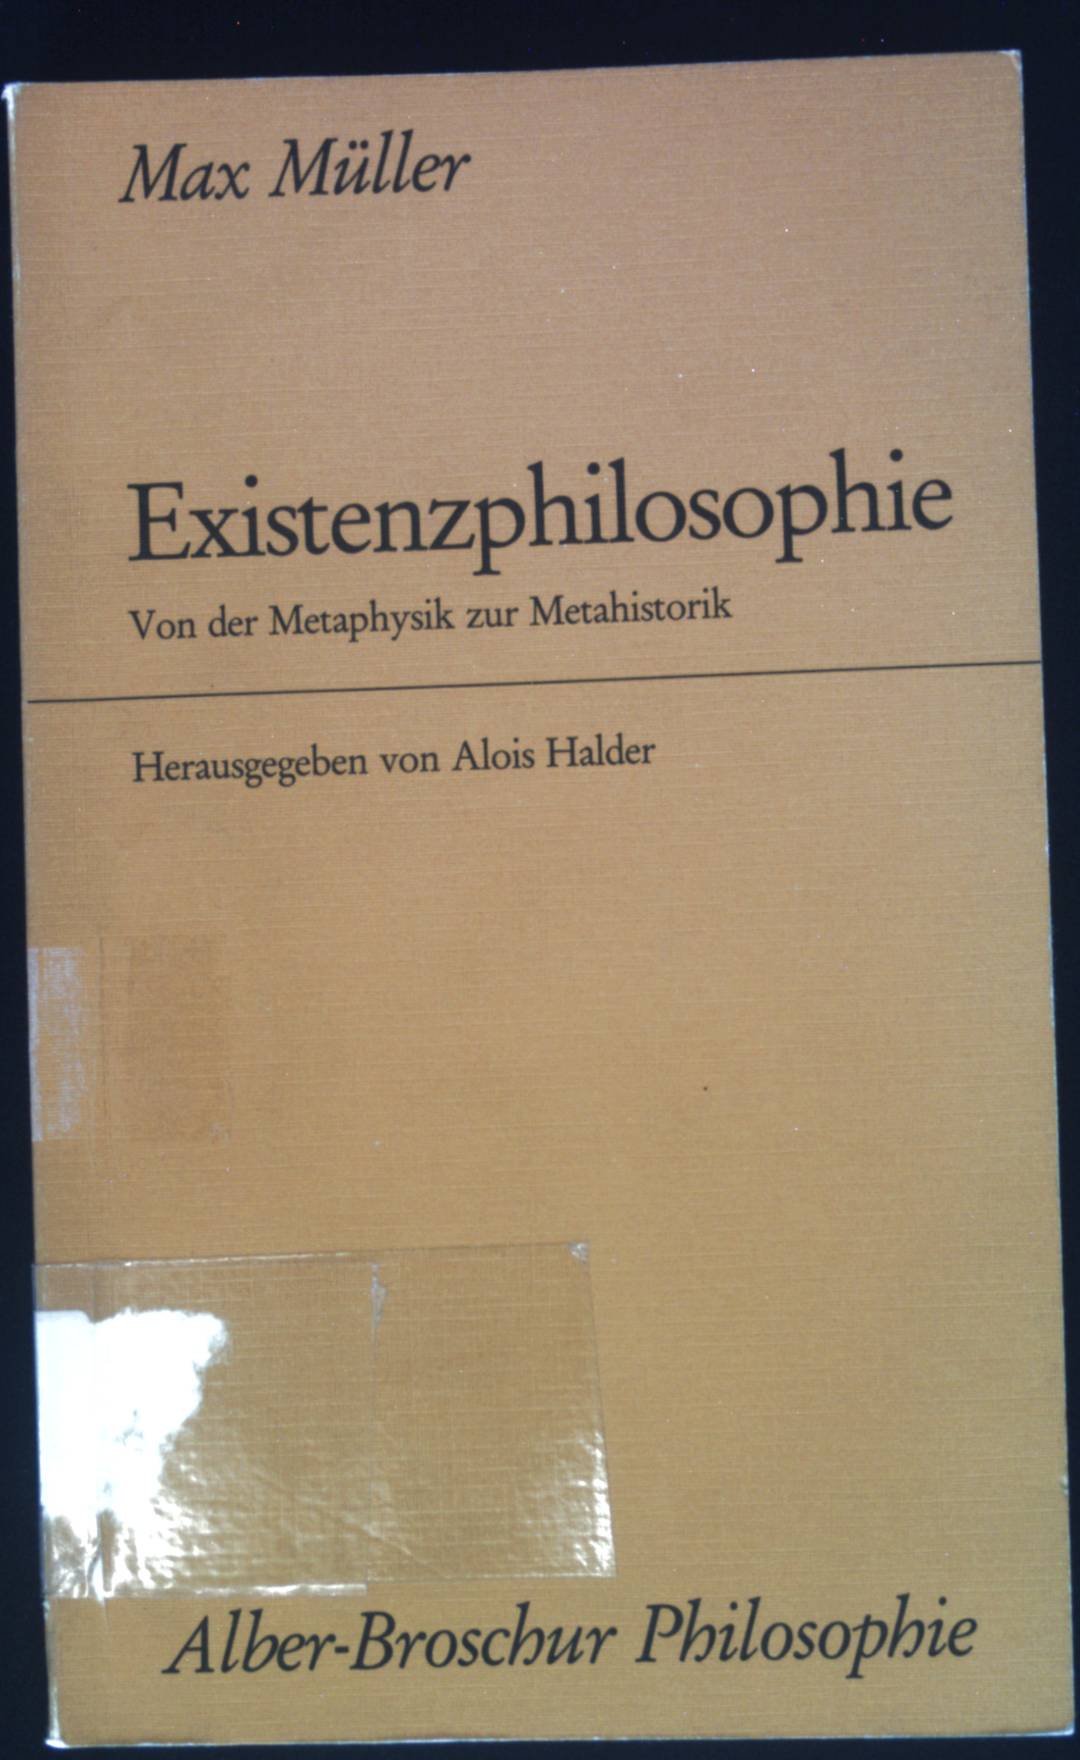 Existenzphilosophie : von d. Metaphysik zur Metahistorik. Alber-Broschur Philosophie - Müller, Max